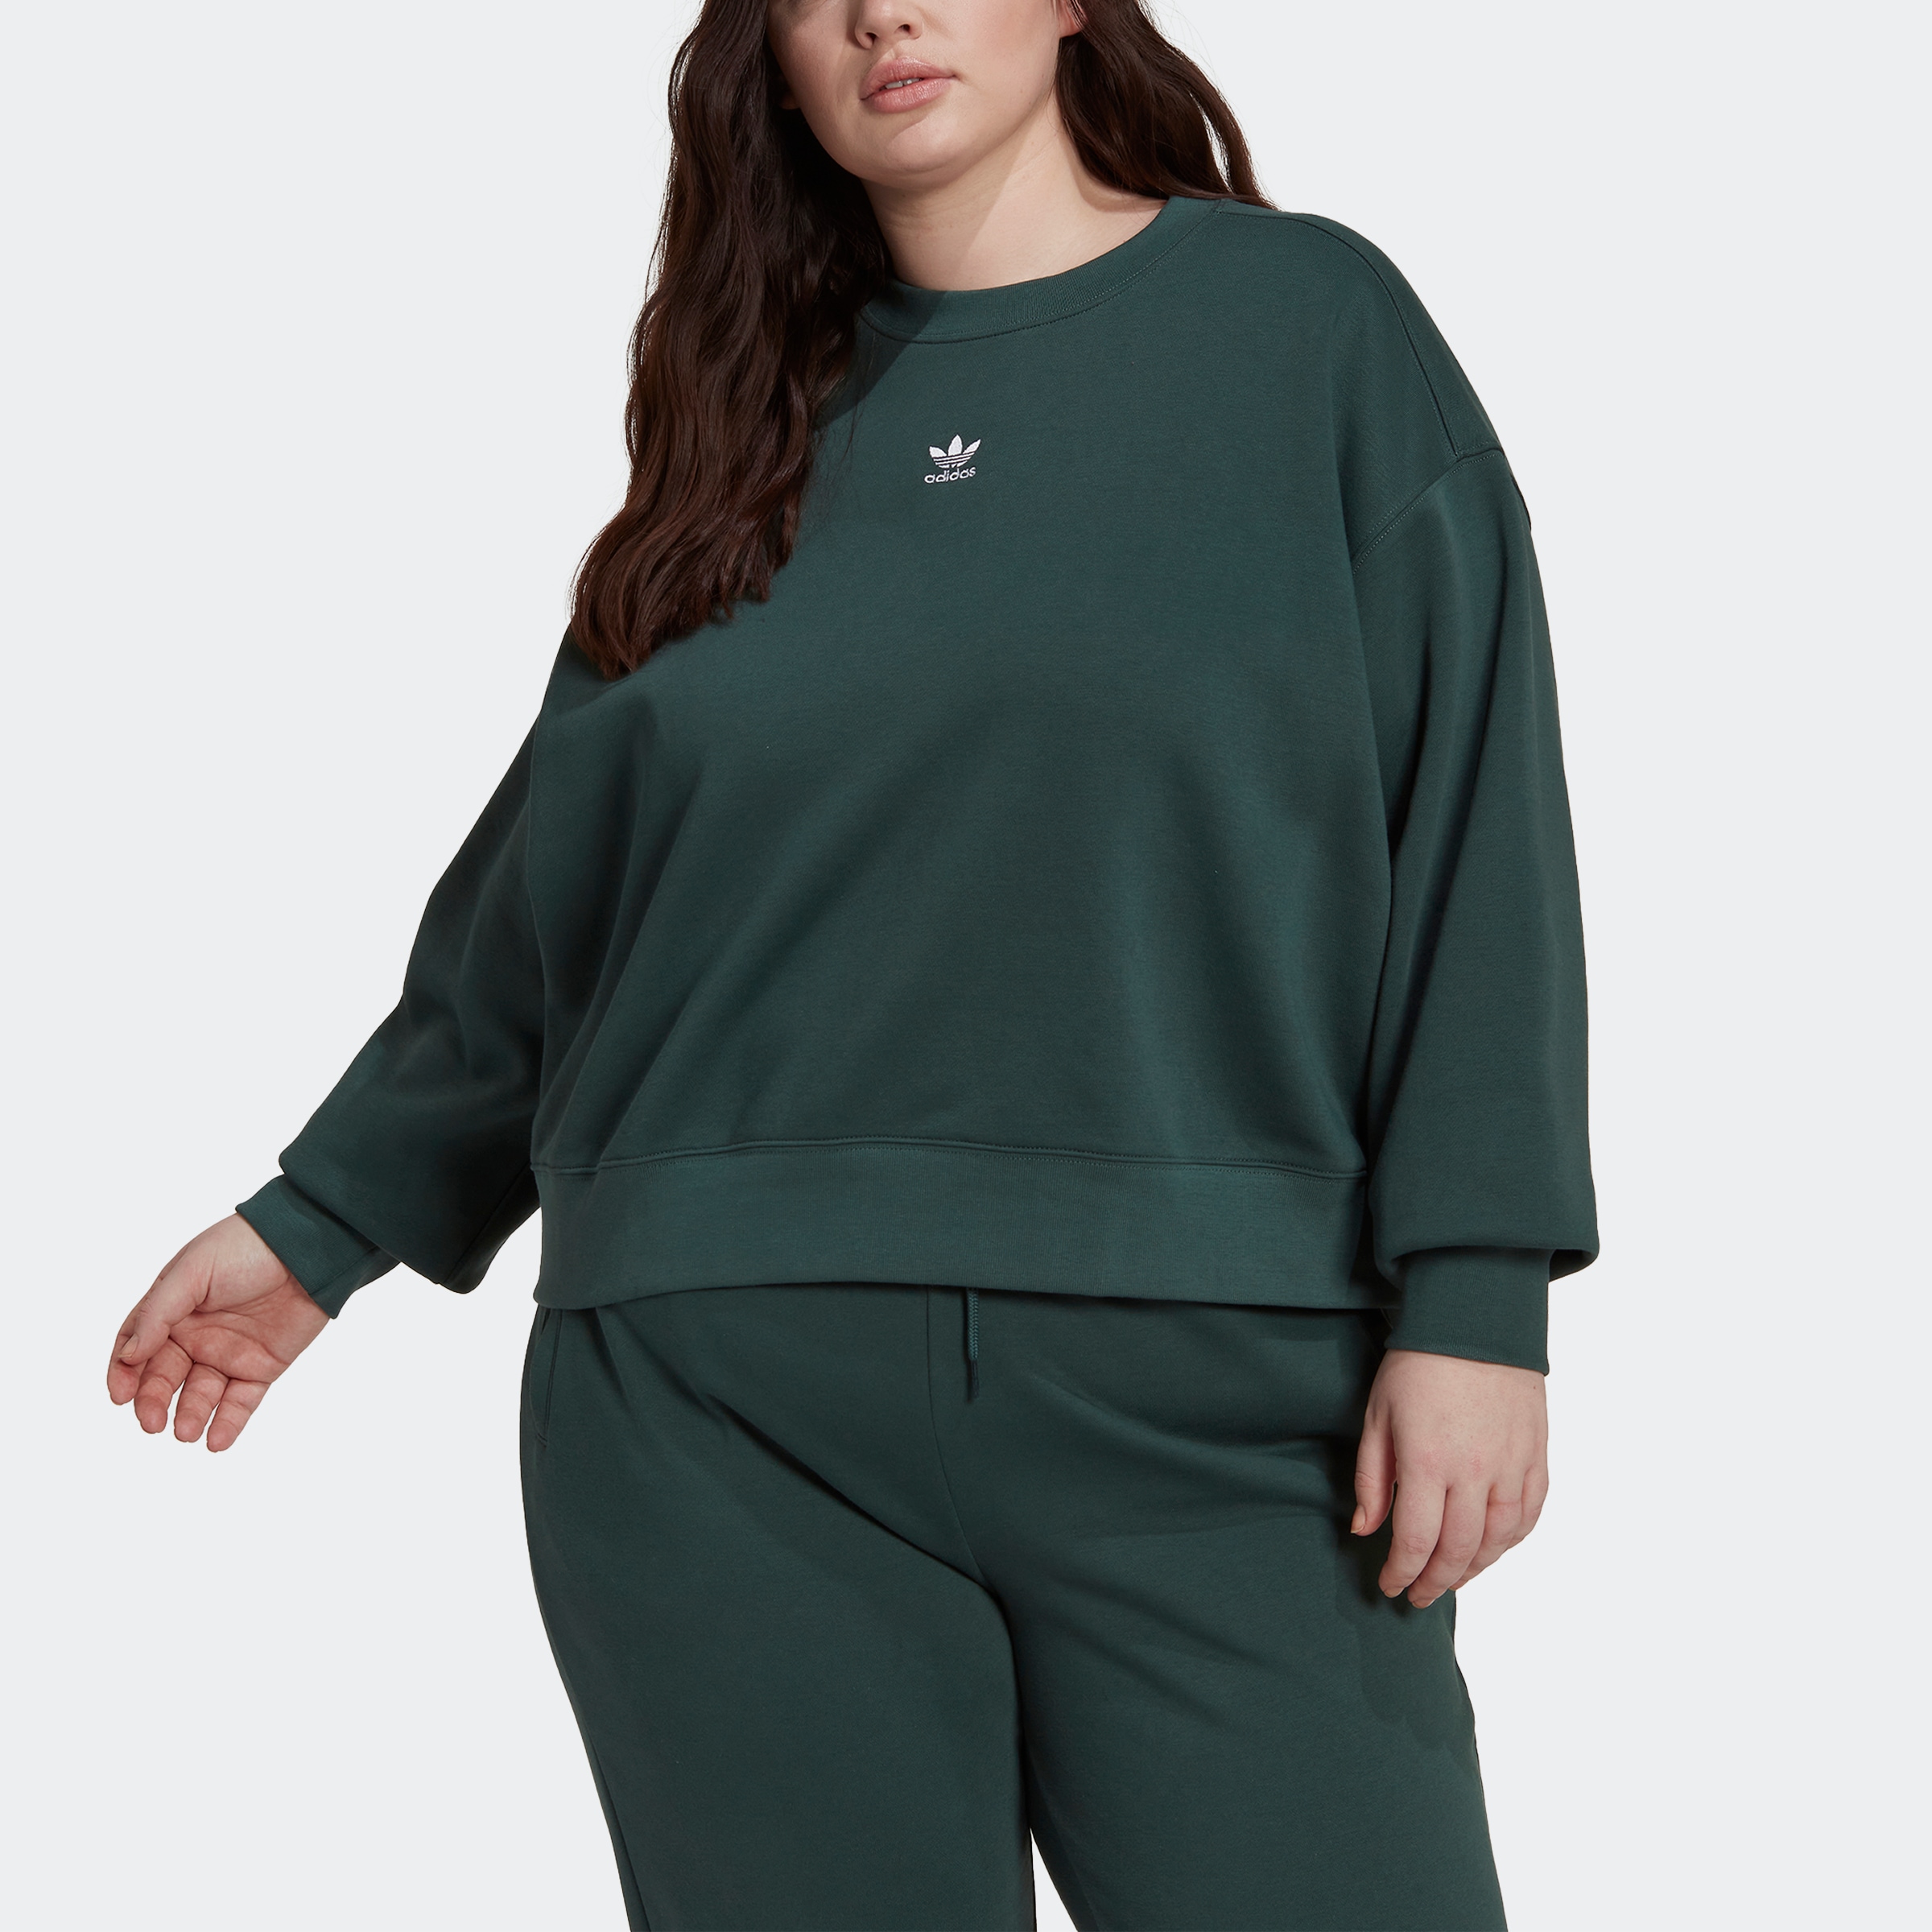 GRÖSSEN« – ESSENTIALS GROSSE »ADICOLOR Originals Schweiz bei adidas shoppen online Jelmoli-Versand Sweatshirt